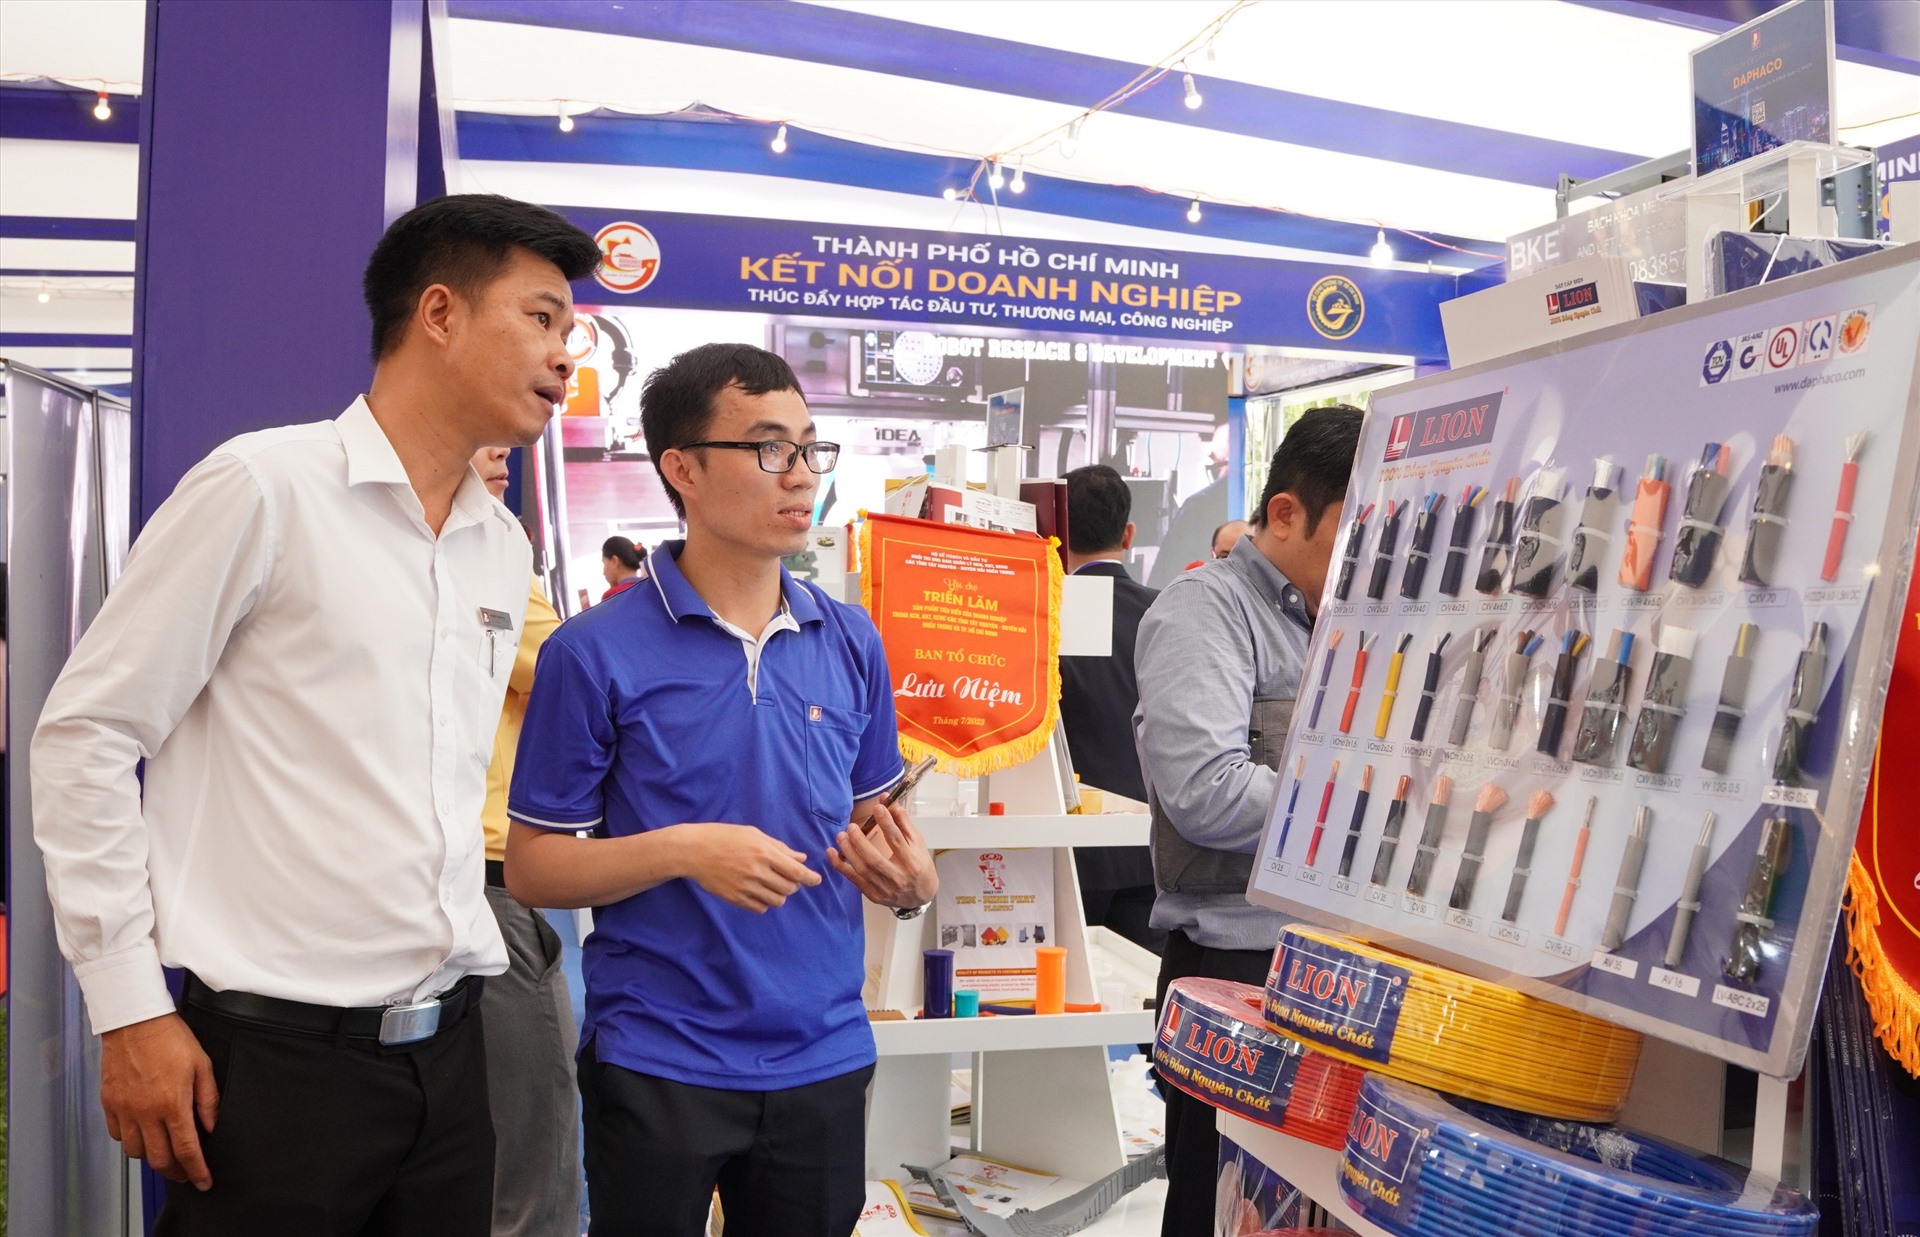 Hội chợ triển lãm thu hút khoảng 70 doanh nghiệp, với 80 gian hàng, có các sản phẩm công nghiệp đạt tiêu chuẩn hàng Việt Nam chất lượng cao. Ảnh: Ngọc Viên